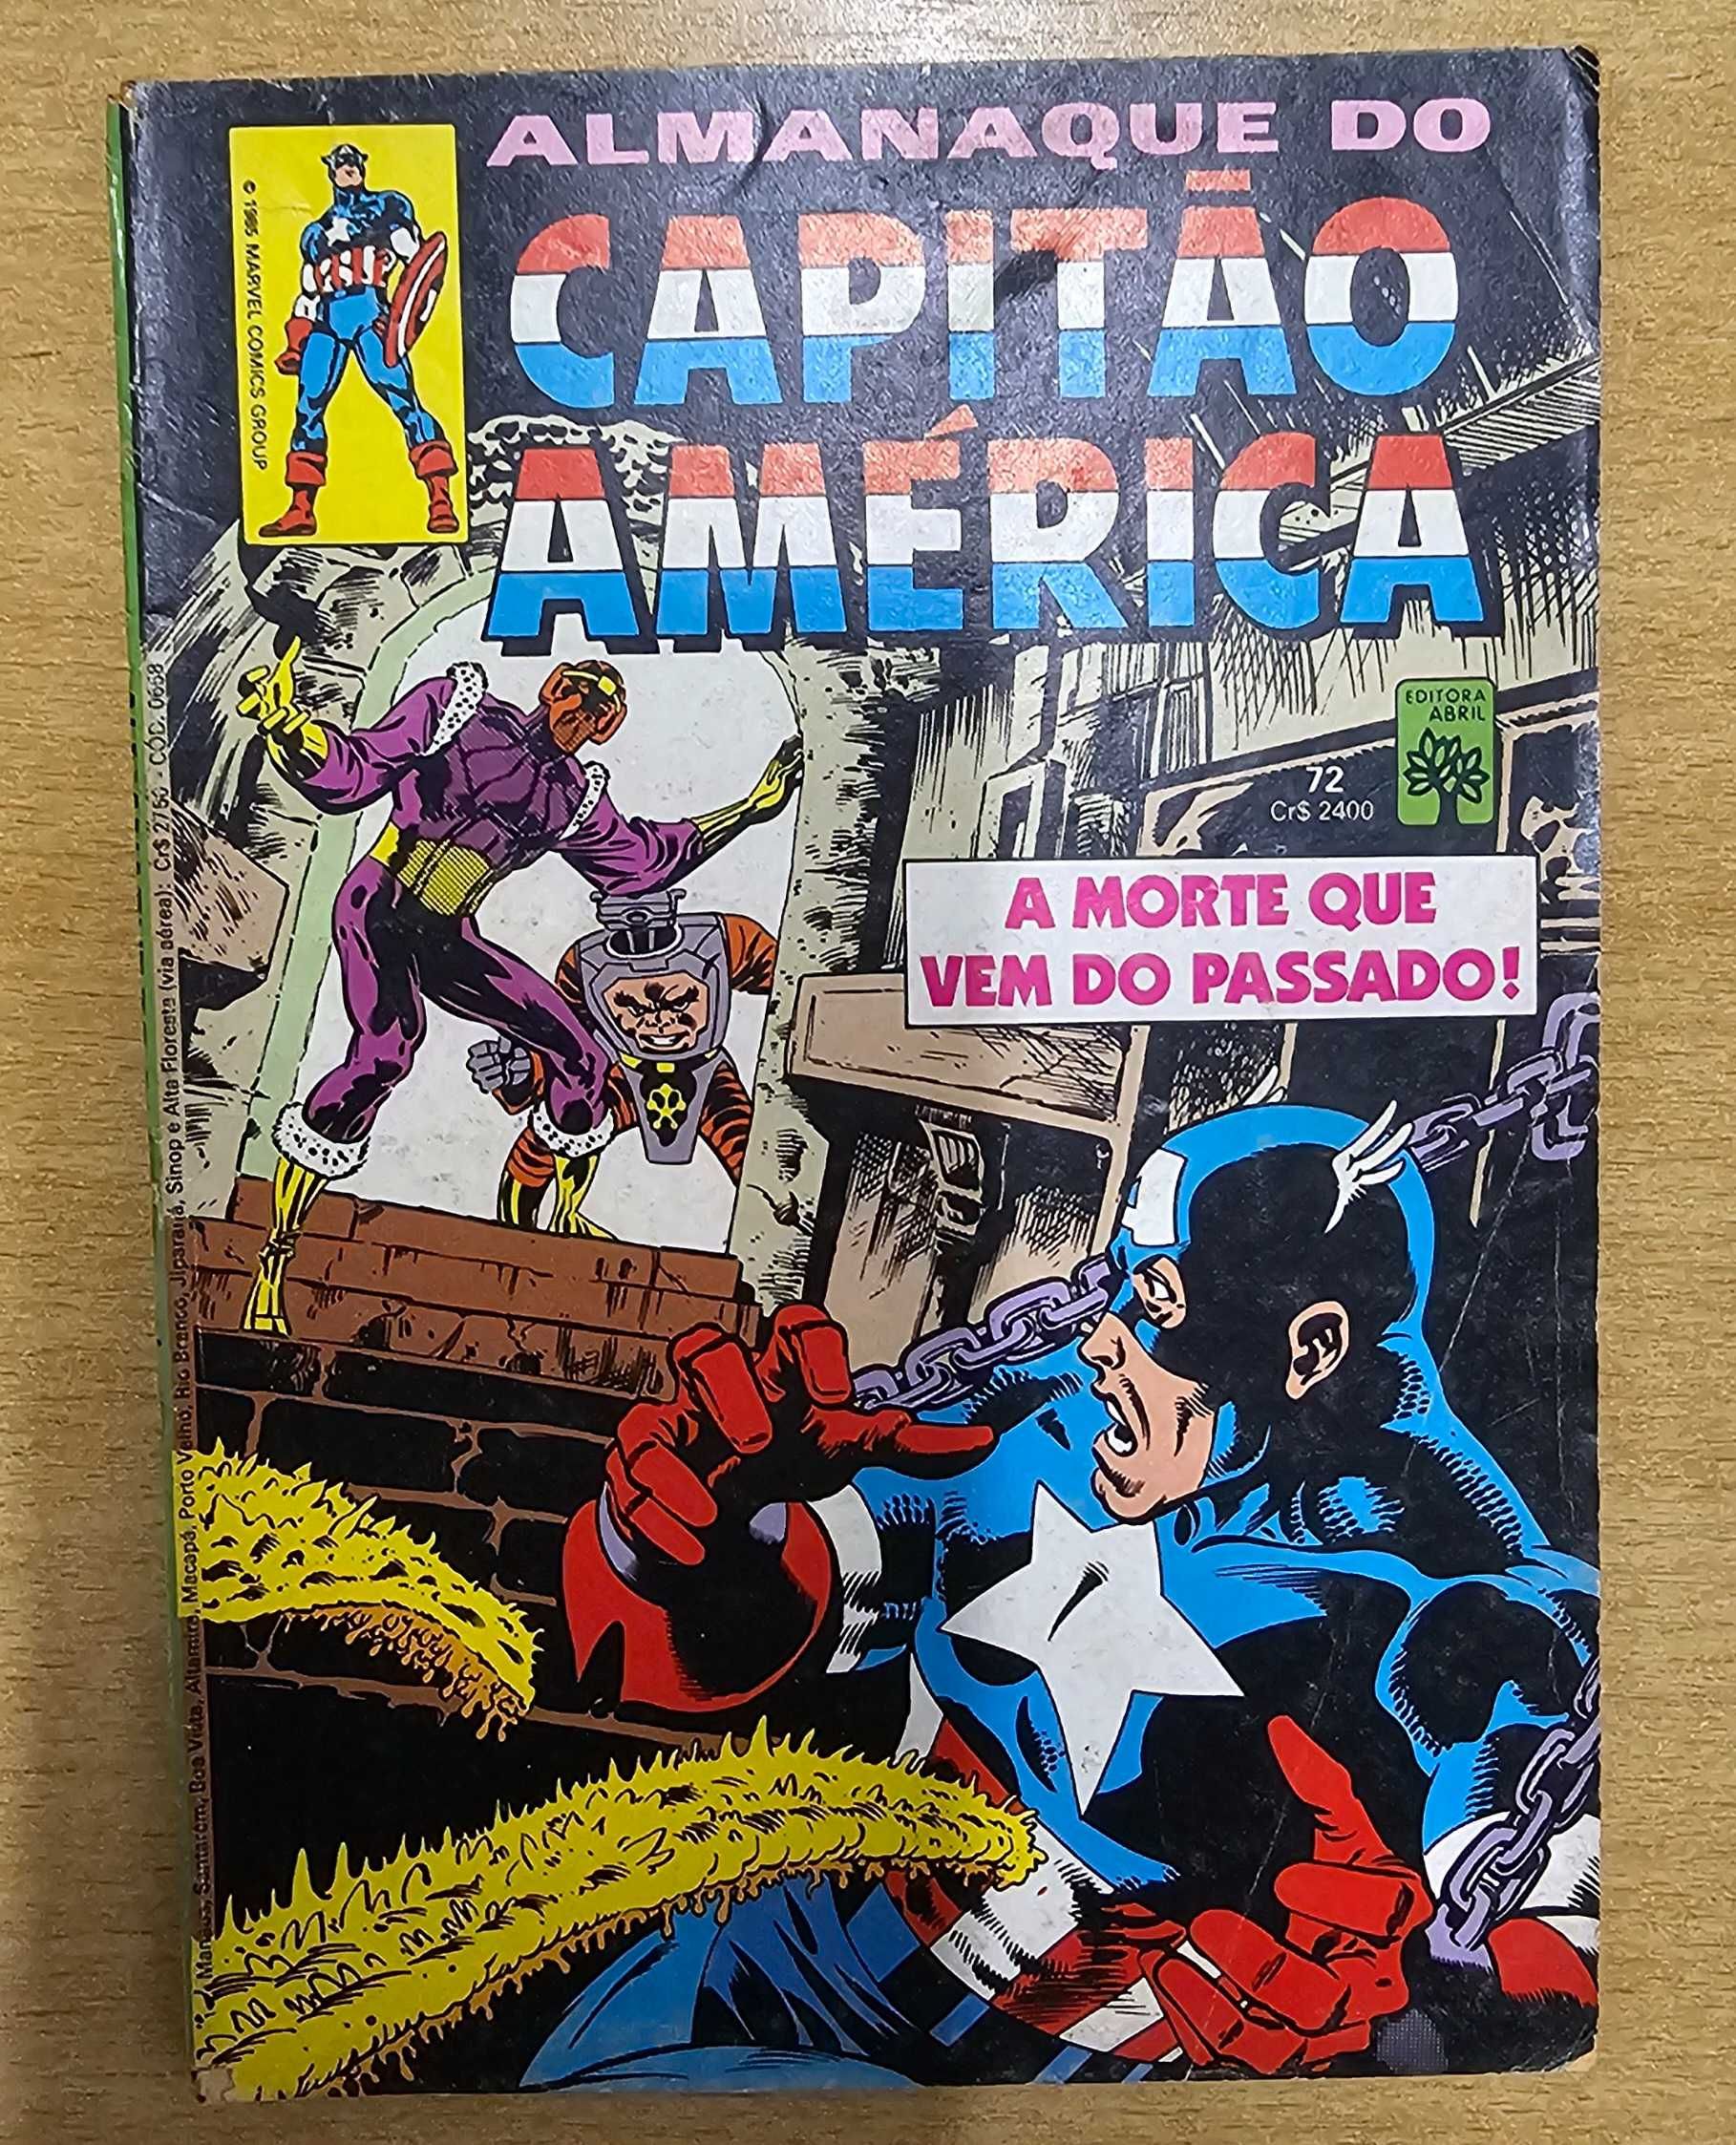 Revista Capitão América, Marvel, Abril